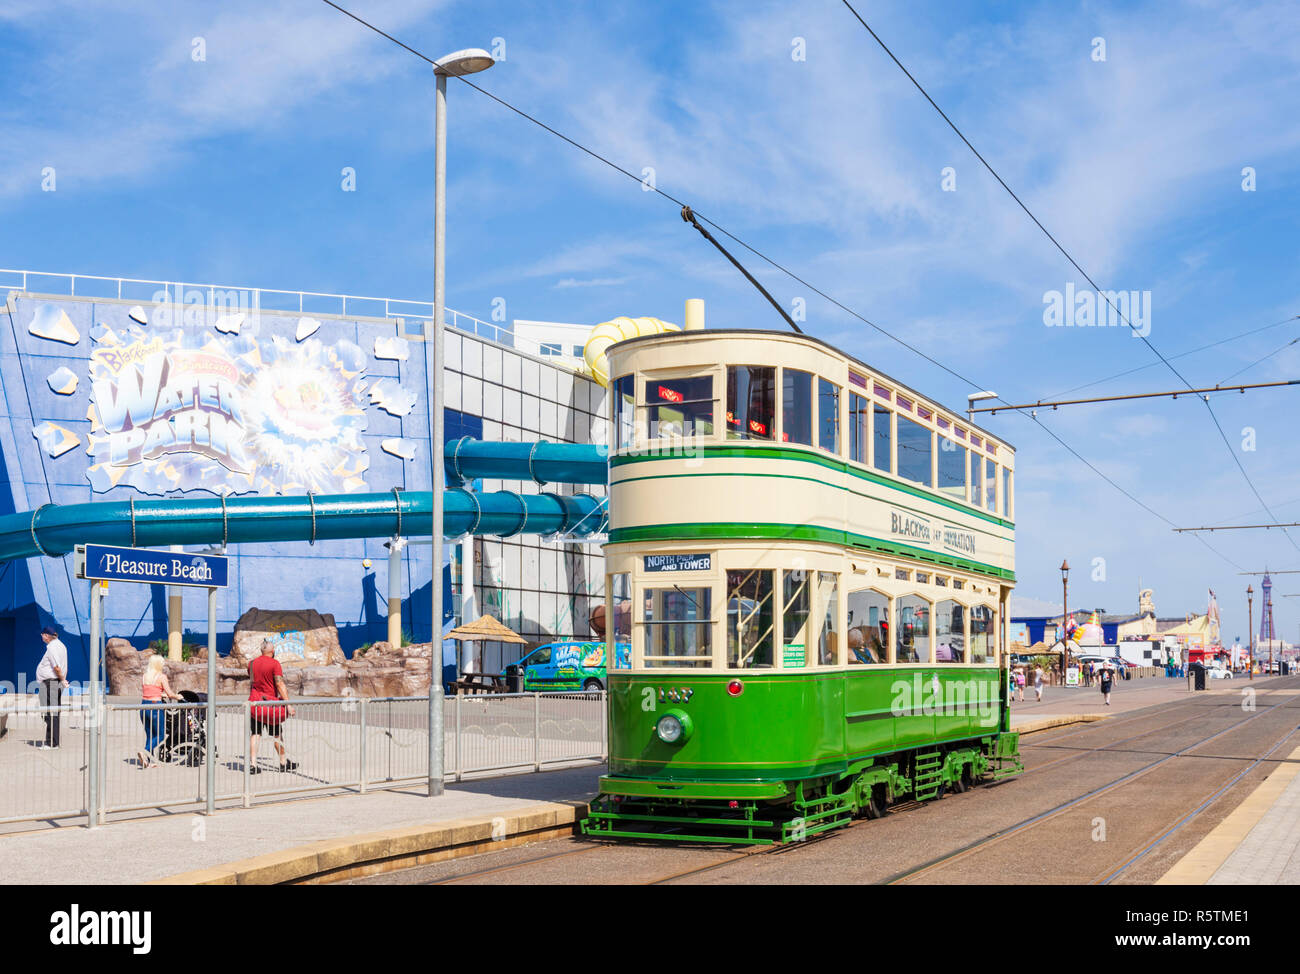 Blackpool patrimonio tram tram di fronte al parco acquatico Sandcastle divertimento acquatico parco sulla Promenade di Blackpool Lancashire England Regno Unito GB Europa Foto Stock